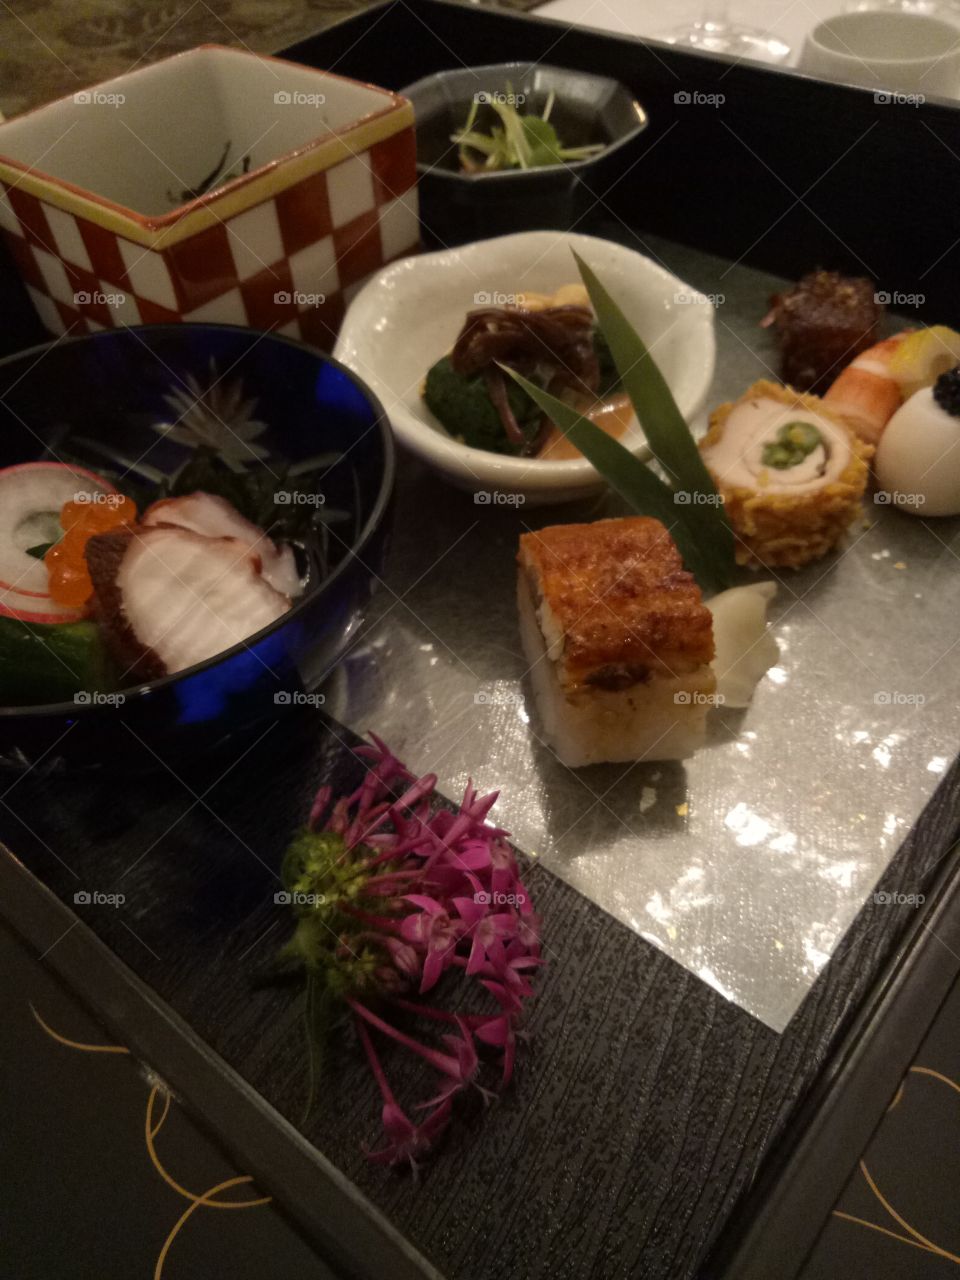 japan's bento meal